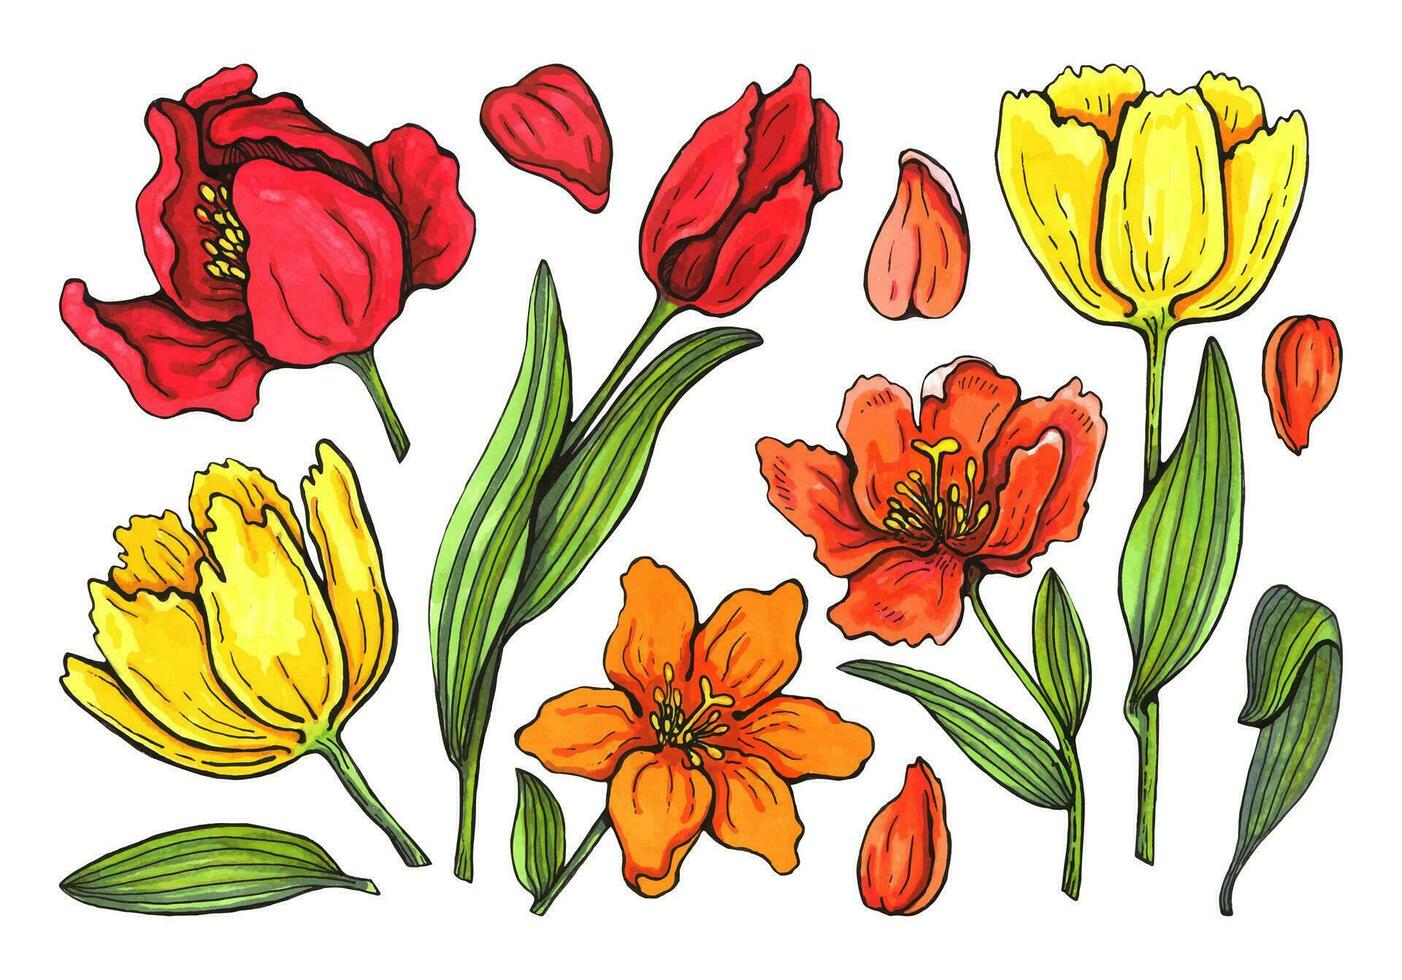 Frühling Blumen und Blätter von Tulpen gemalt durch Aquarell. einstellen zum irgendein Design vektor